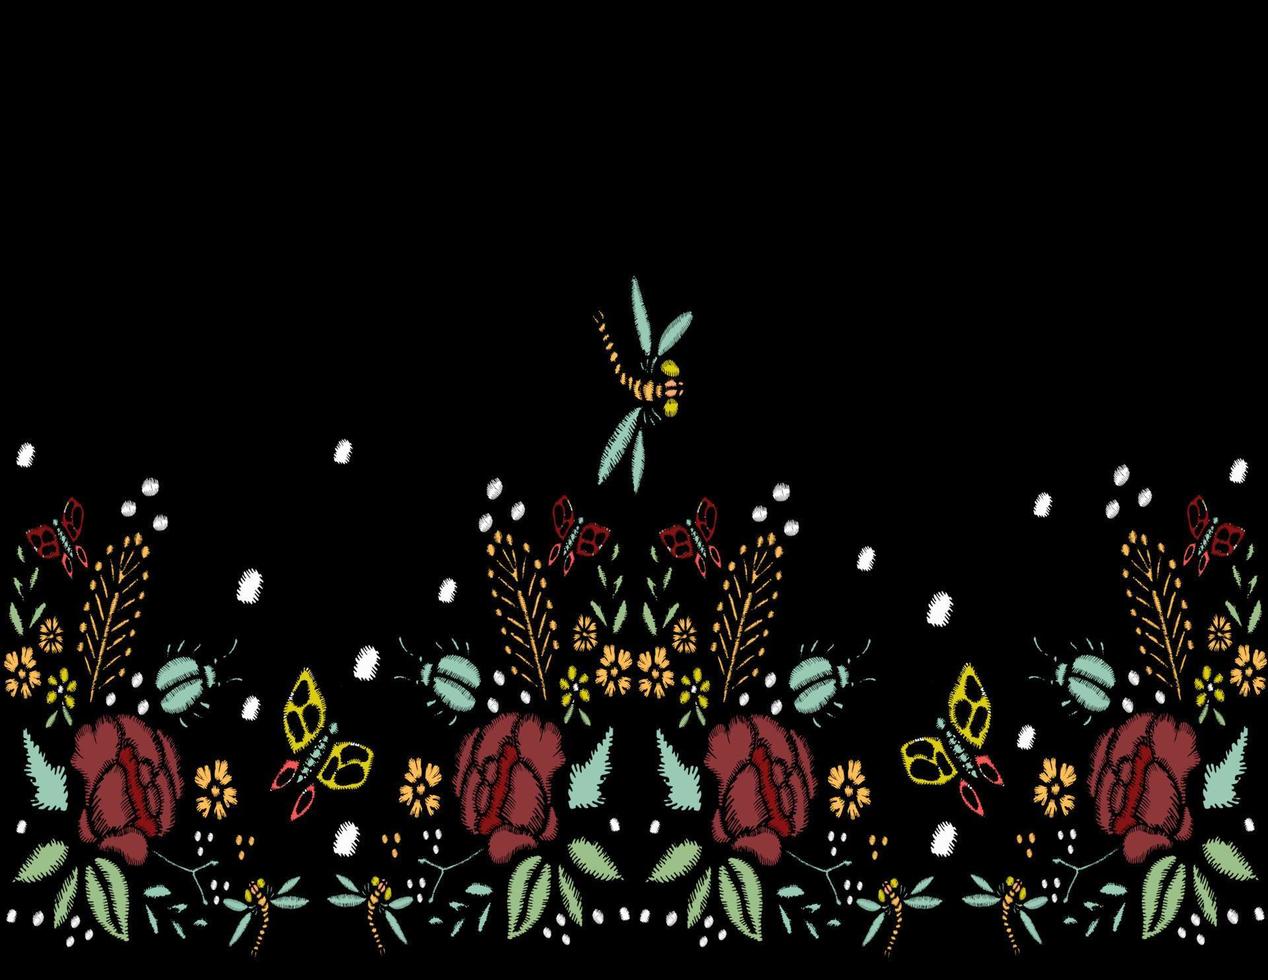 borduursteken met rozen, weidebloemen, libellen, vlinders, kevers. hand getekend mode vectorillustratie. bloemen rand. op zwarte achtergrond. voor stof, textieldecoratie. vector